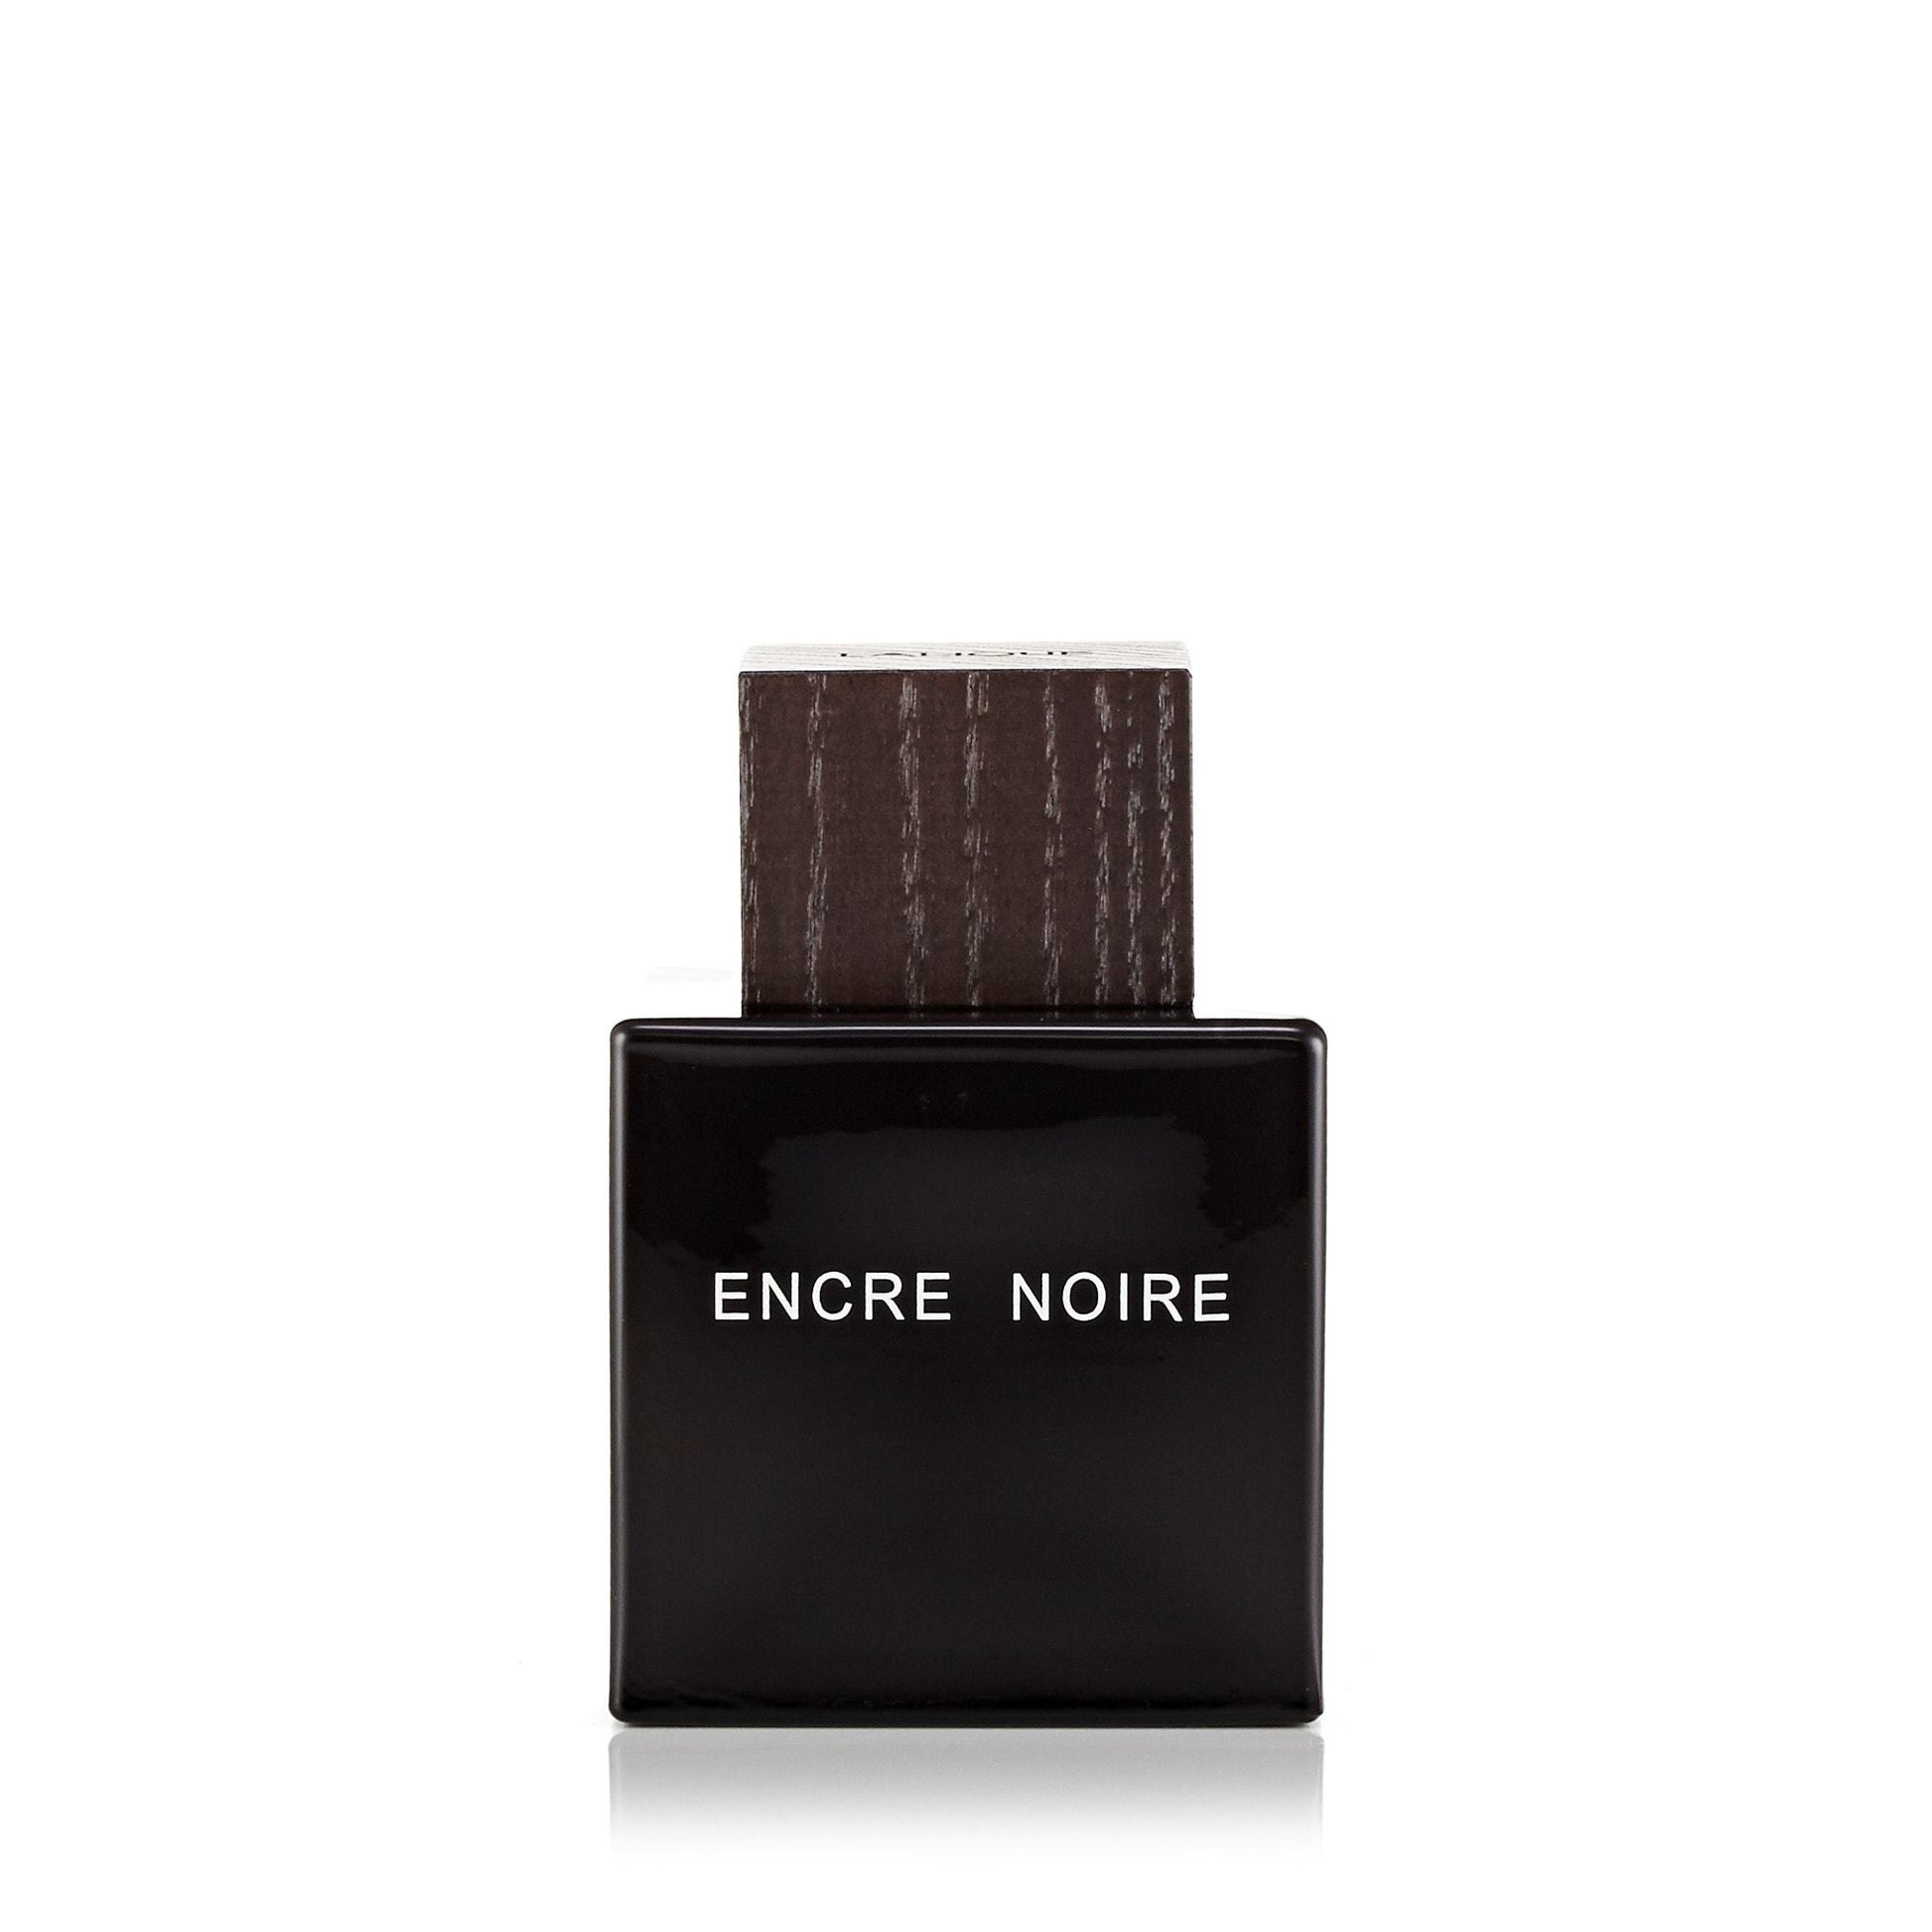 Encre Noire Eau de Toilette Spray for Men by Lalique, Product image 1